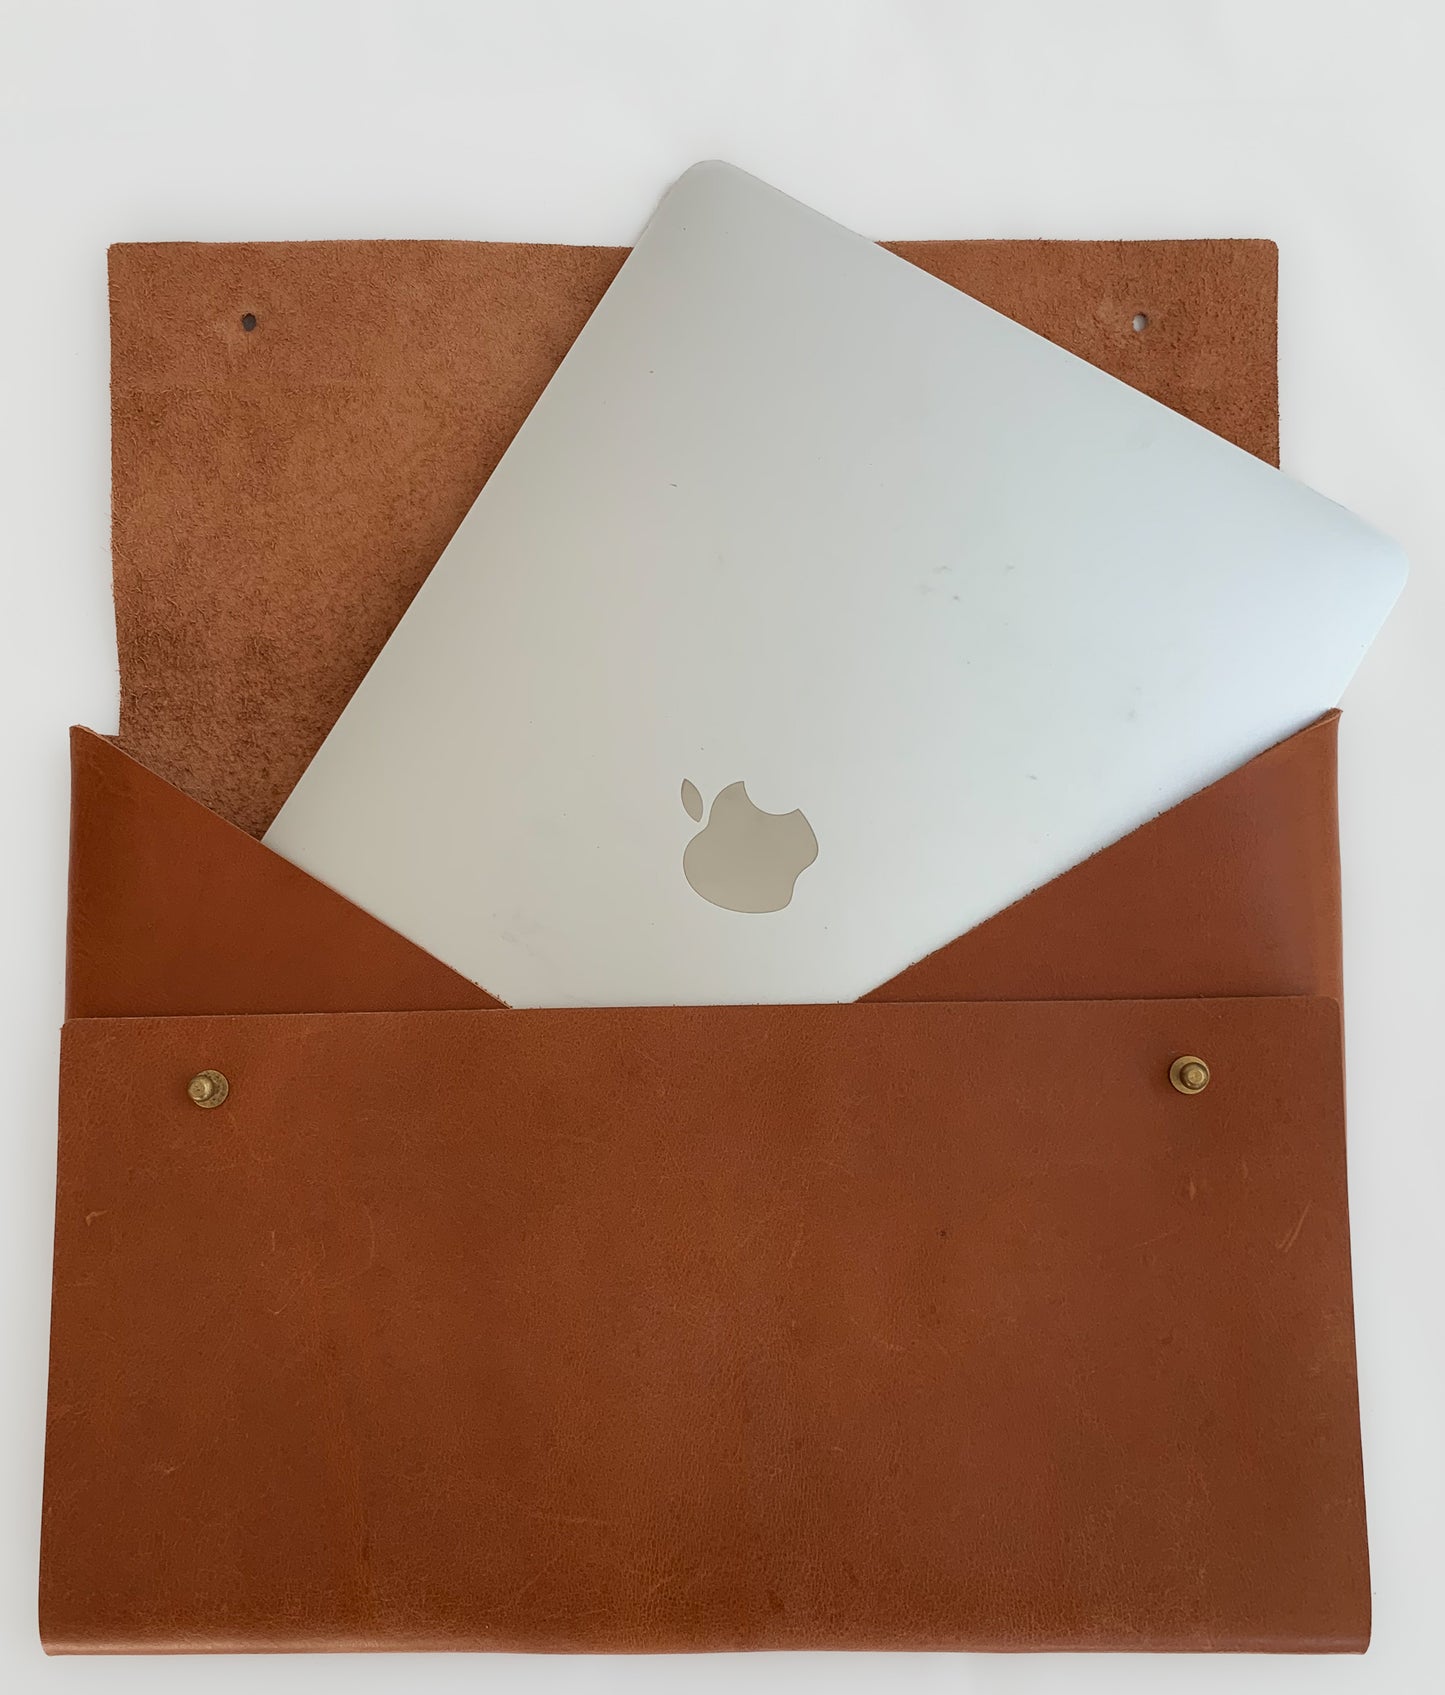 Sanna Leather Tablet / 13 inch Laptop Sleeve